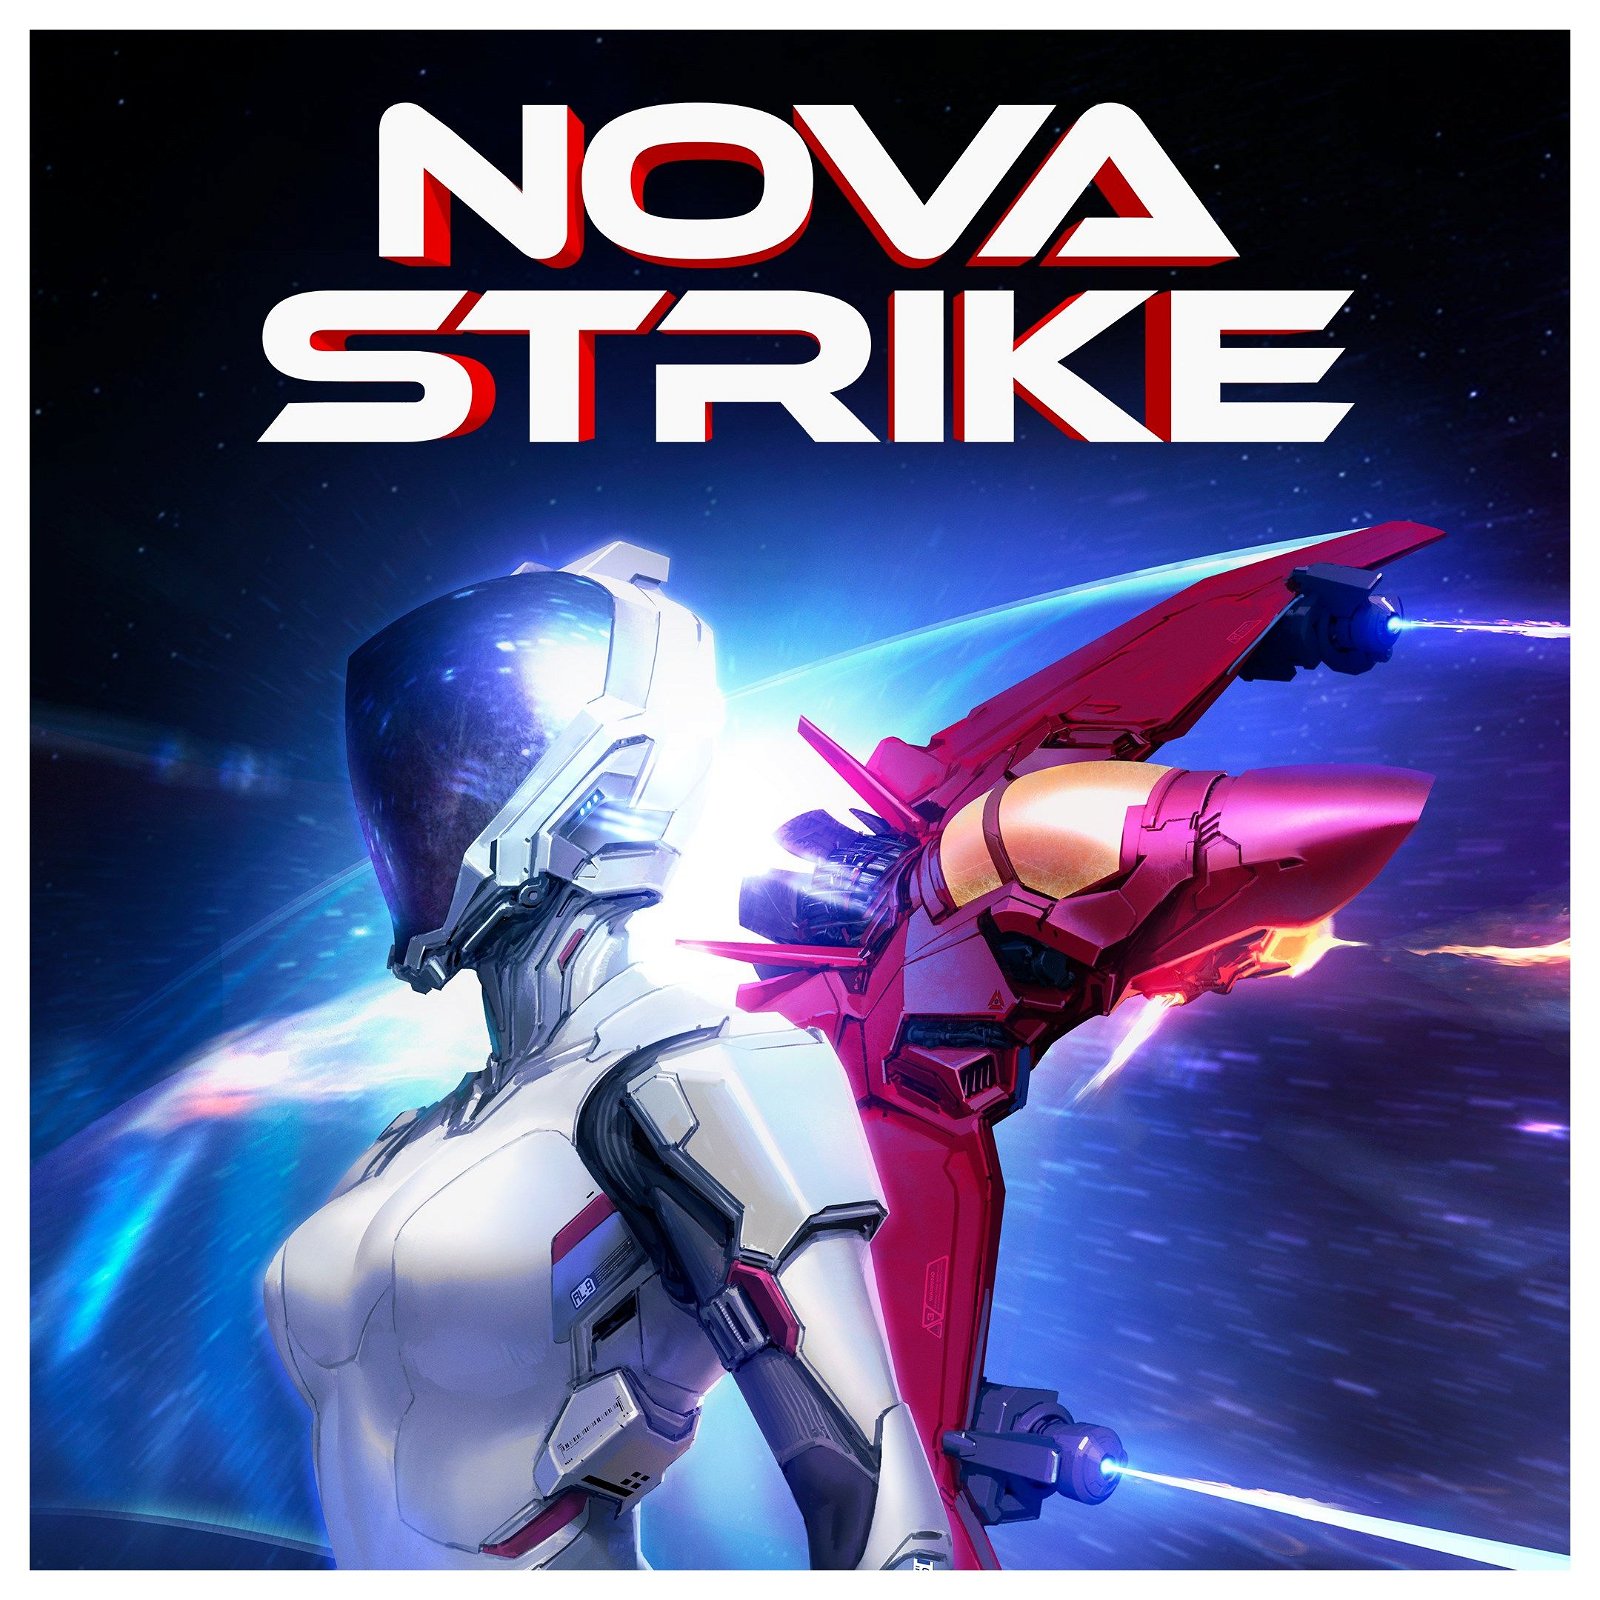 Image of Nova Strike